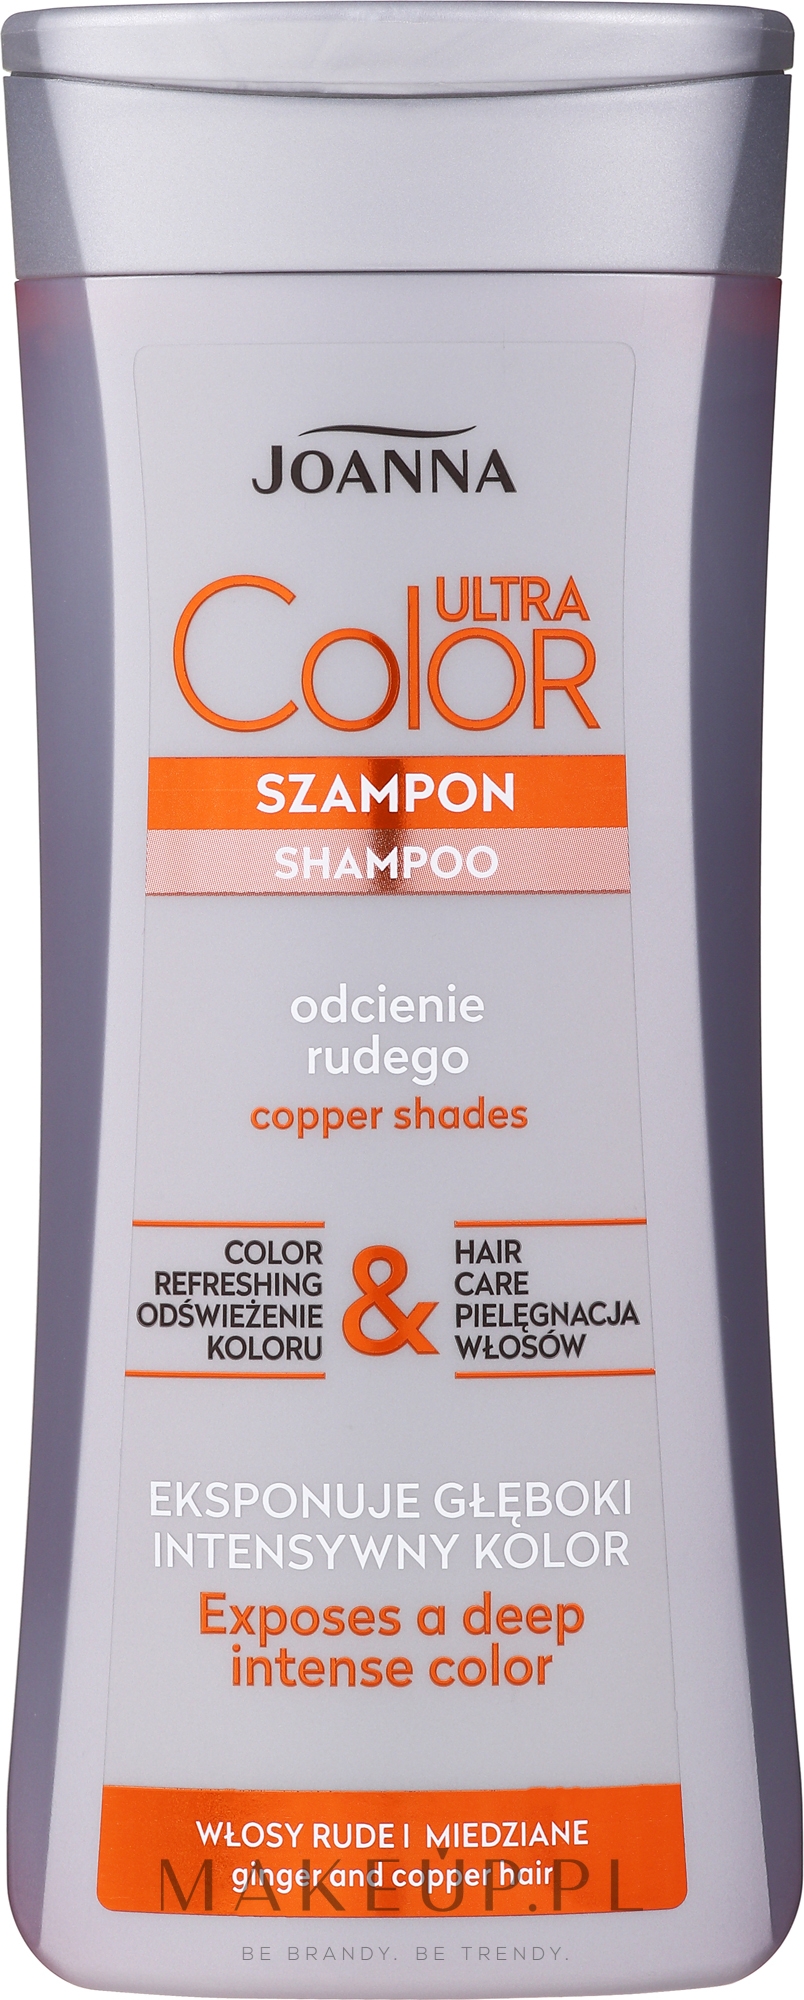 szampon do włosów przetłuszczających się i rudych